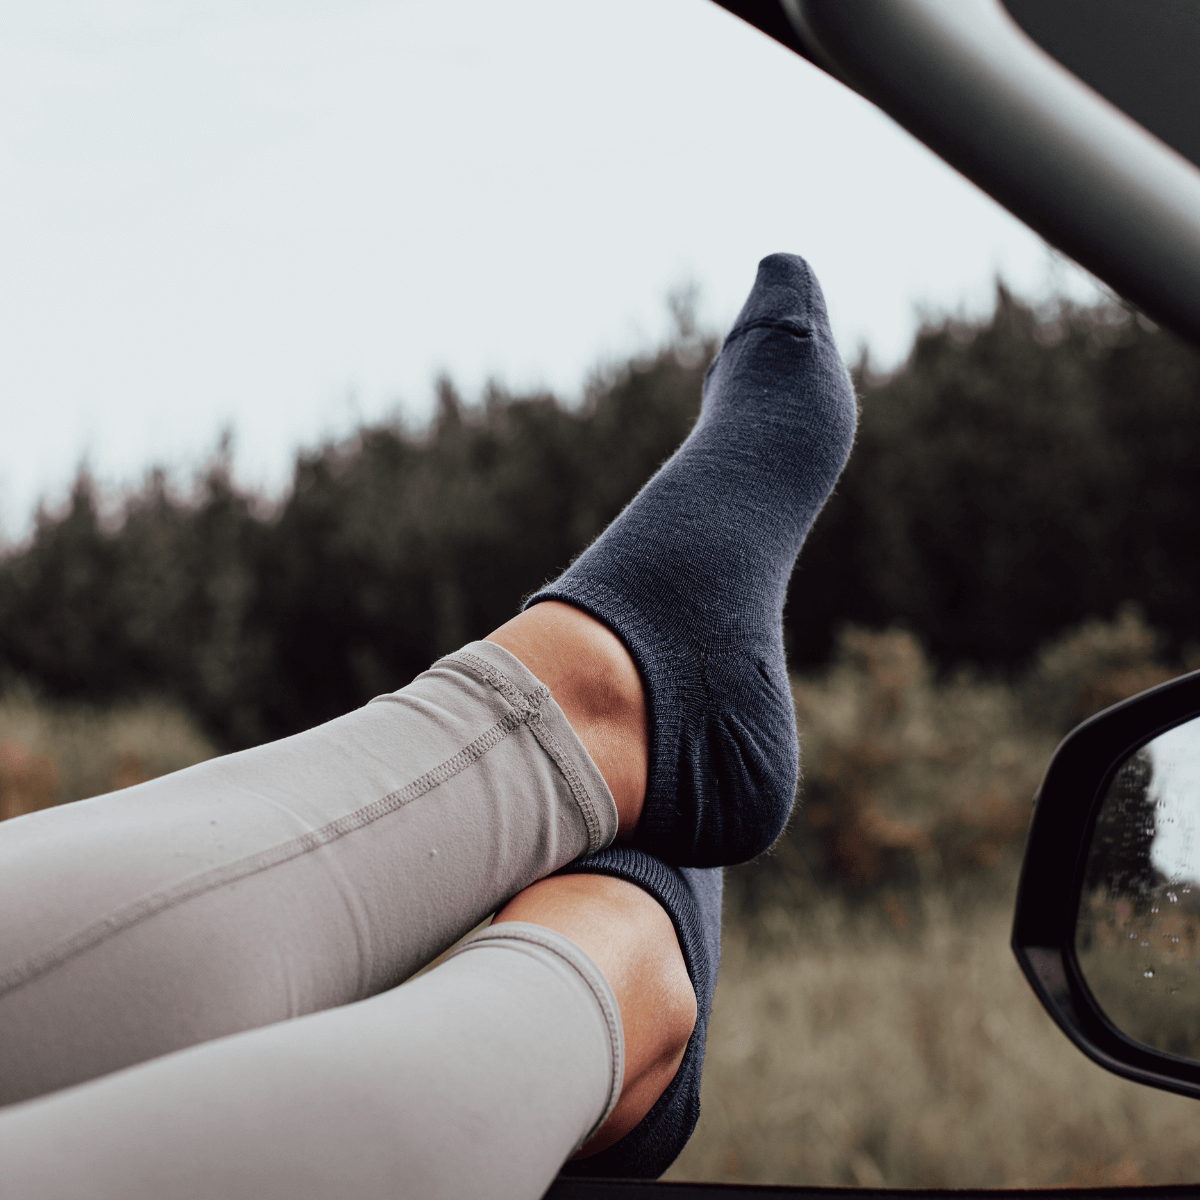 blue-merino-wool-sneaker-socks-women-nz